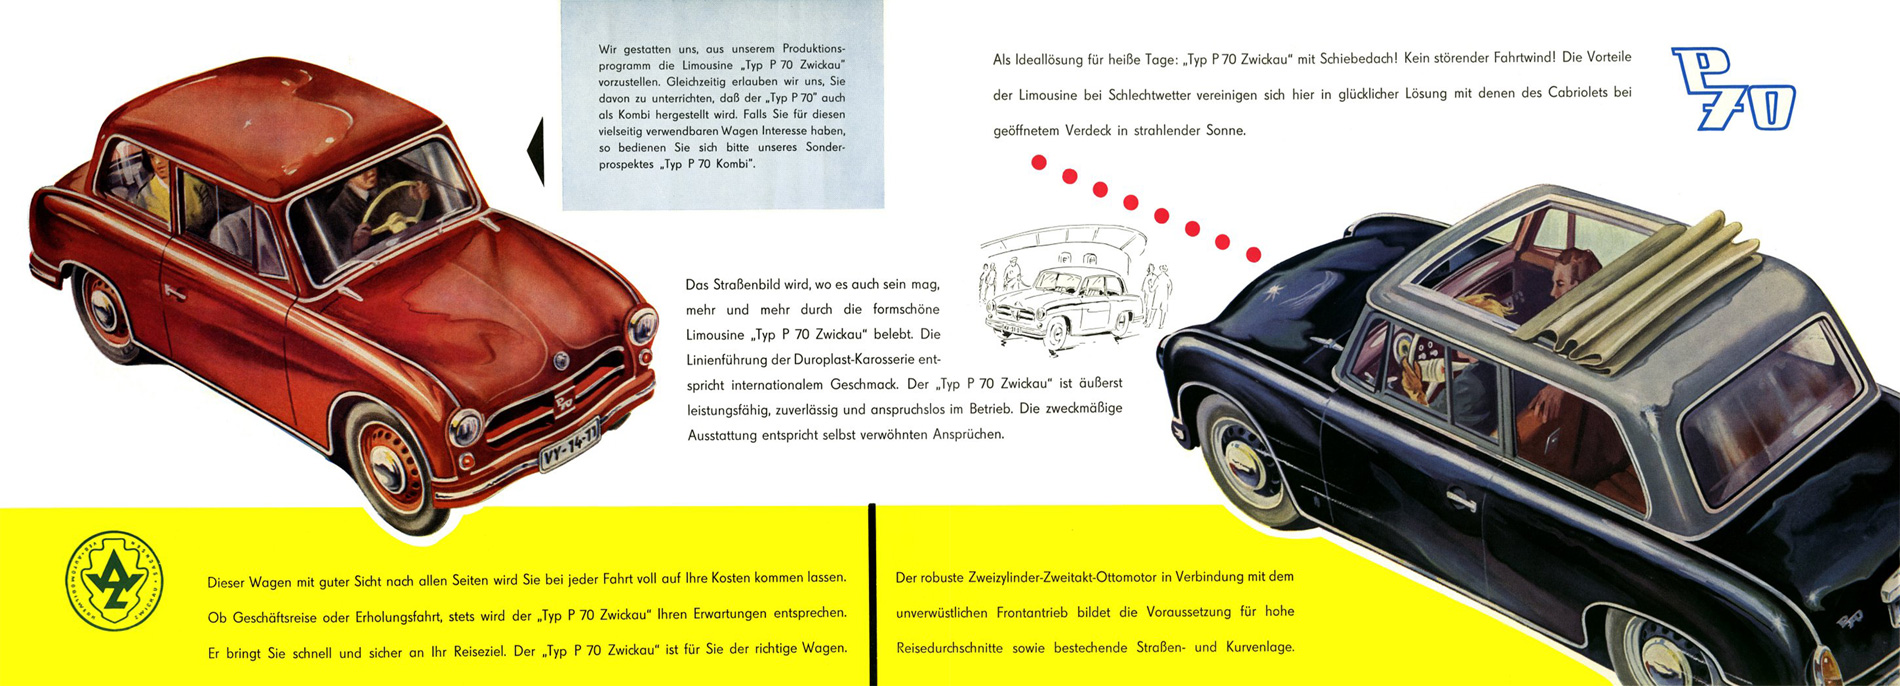 1956 - AWZ P 70 - Seite 2 und 3